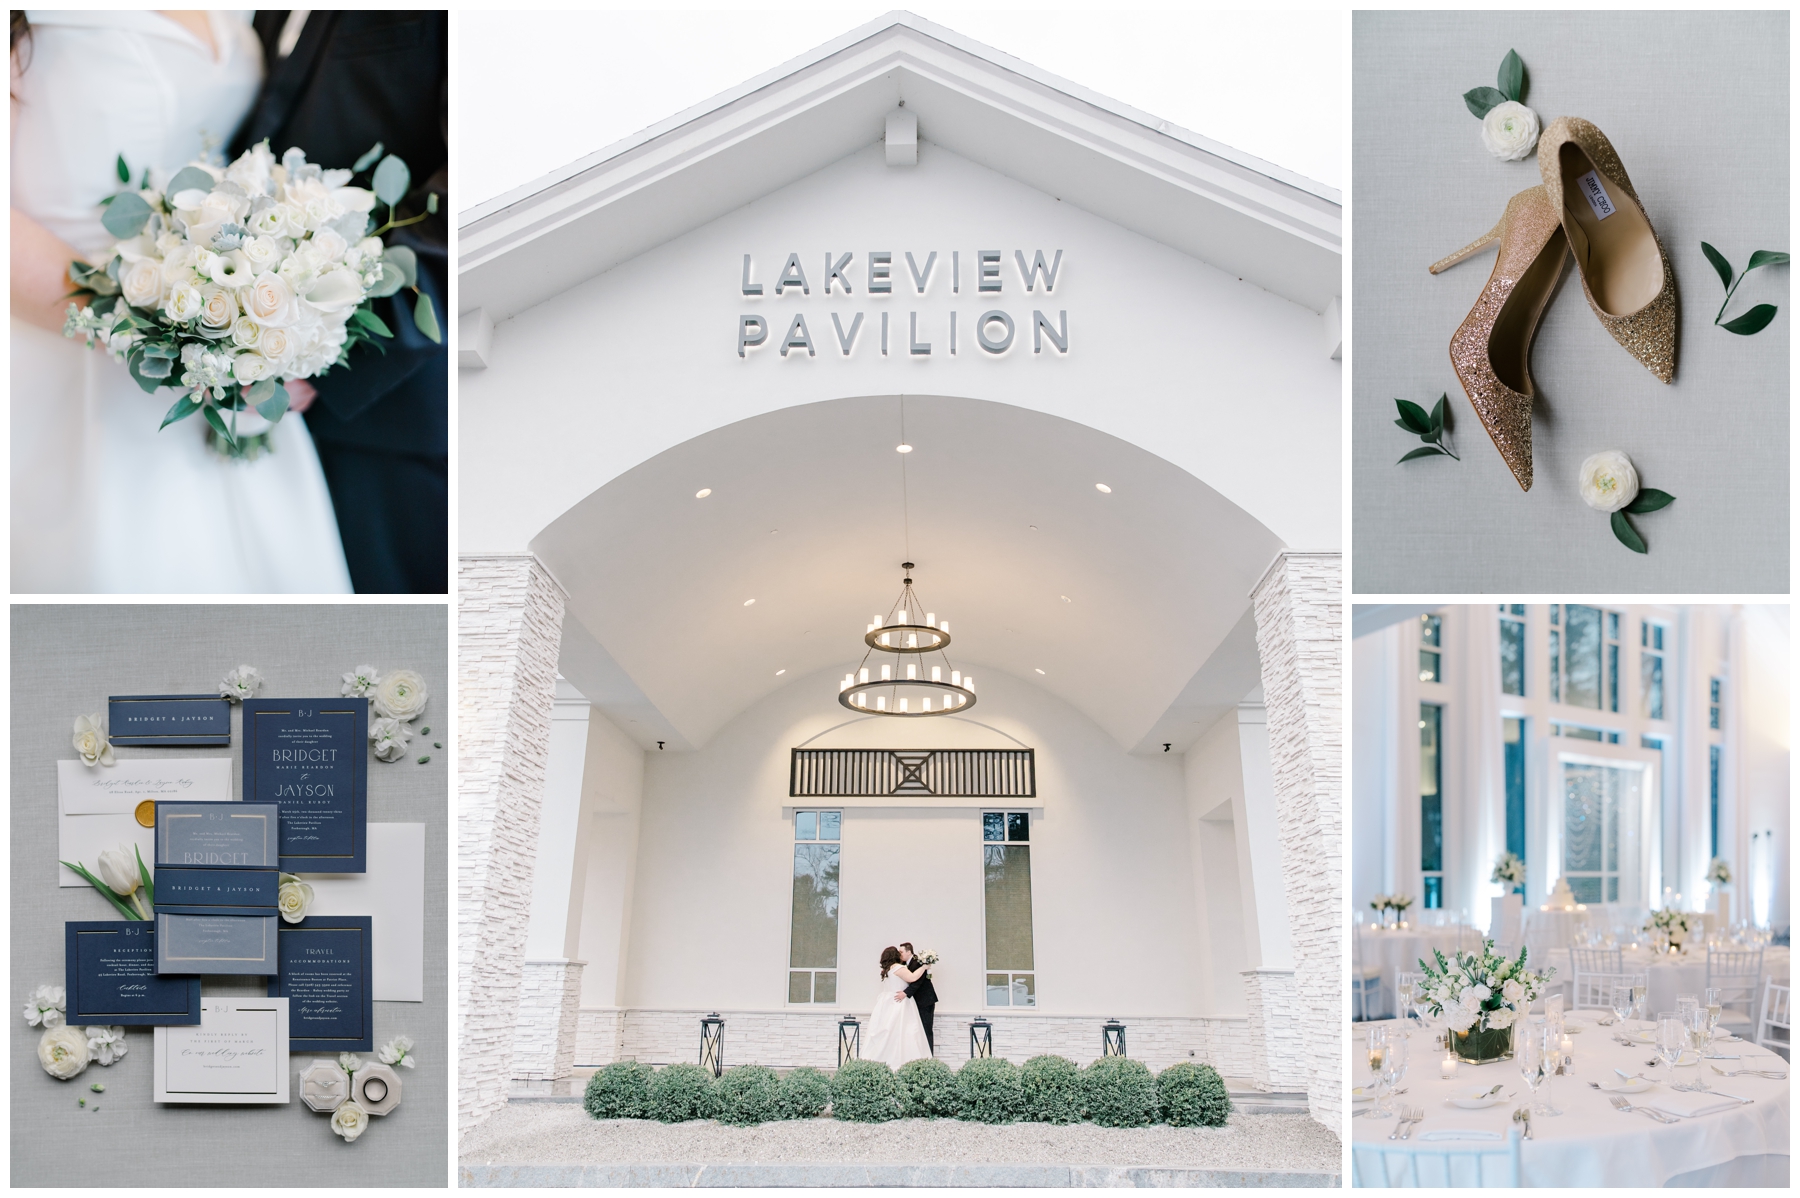 Elegant Lakeview Pavilion Wedding photographed by Boston Wedding photographer Stephanie Berenson